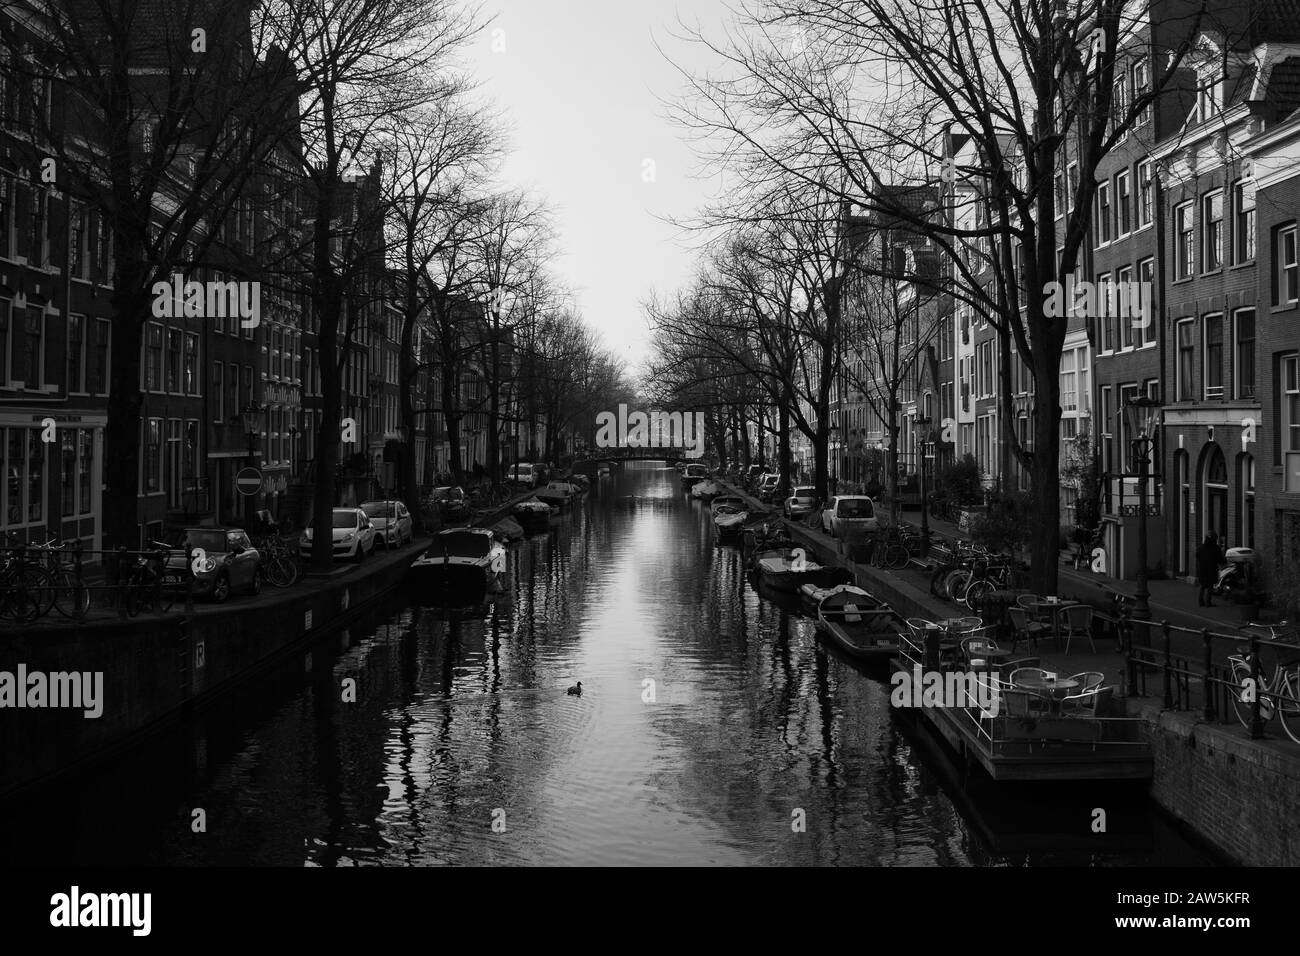 Amsterdam - 26/1/2020 - une vue en noir et blanc d'un pont, une image générique qui pourrait être n'importe où à amsterdam Banque D'Images